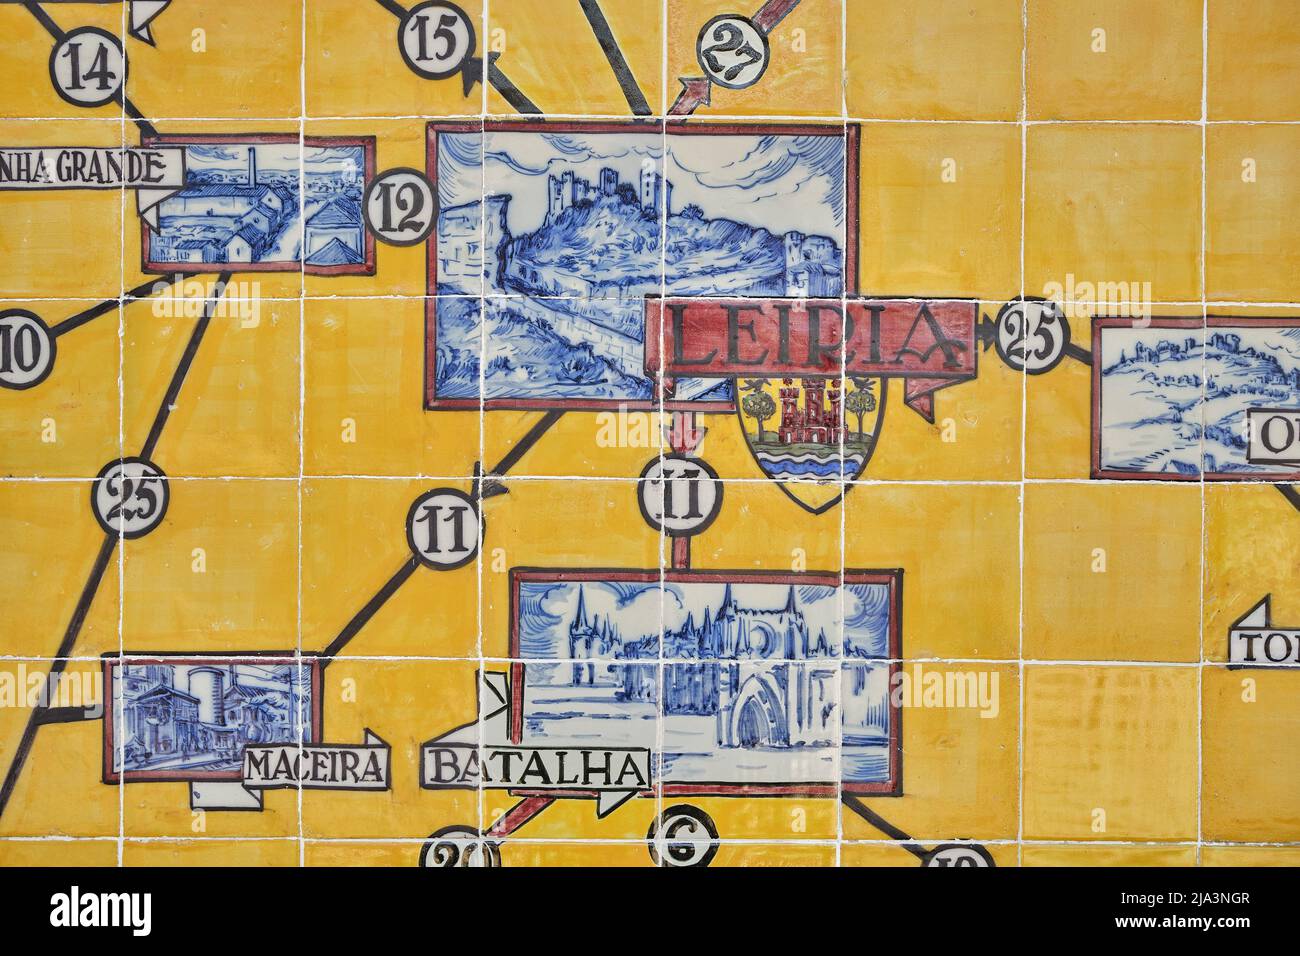 Pannello di azulejos che rappresenta monumenti e scene di campagna sulle pareti della stazione di Leiria, Portogallo Foto Stock